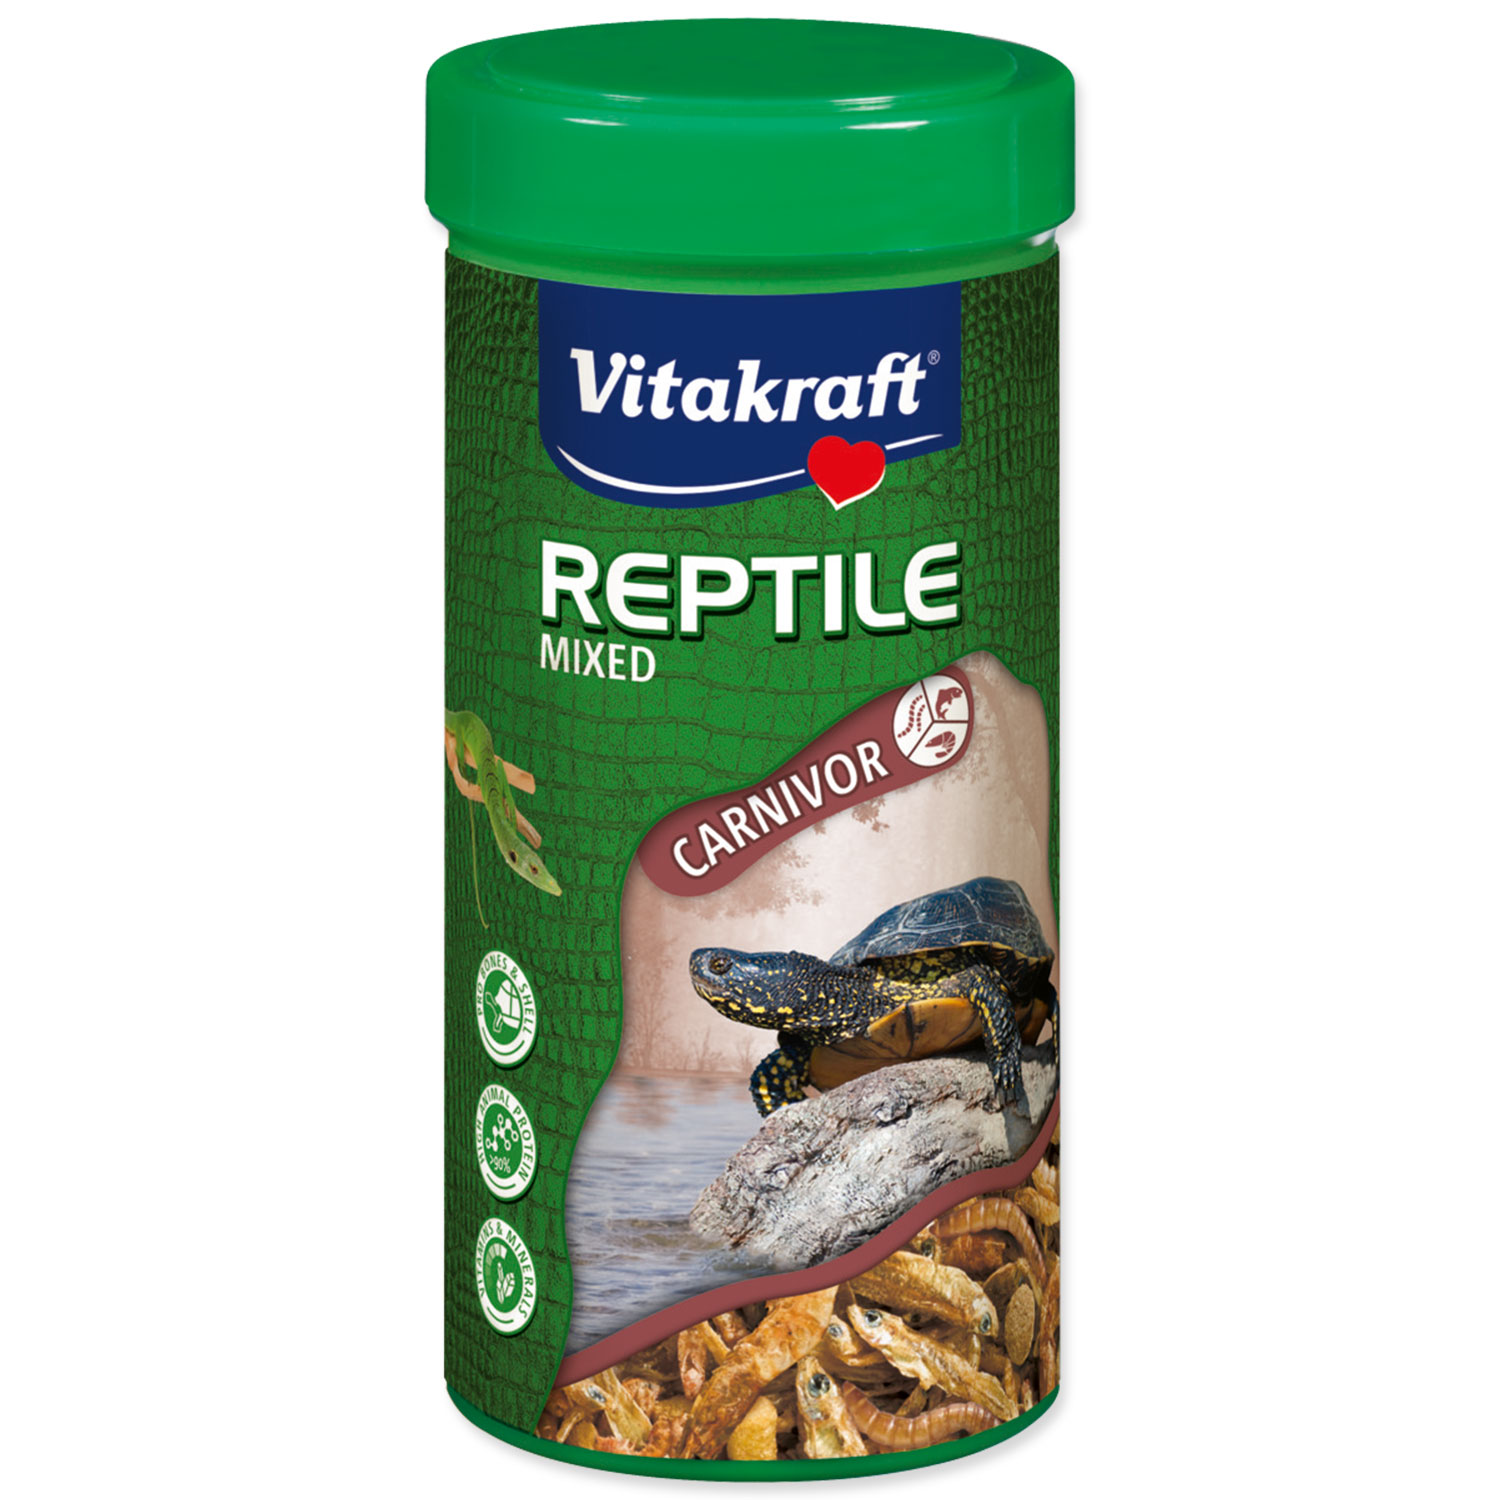 VITAKRAFT Reptile Mixed